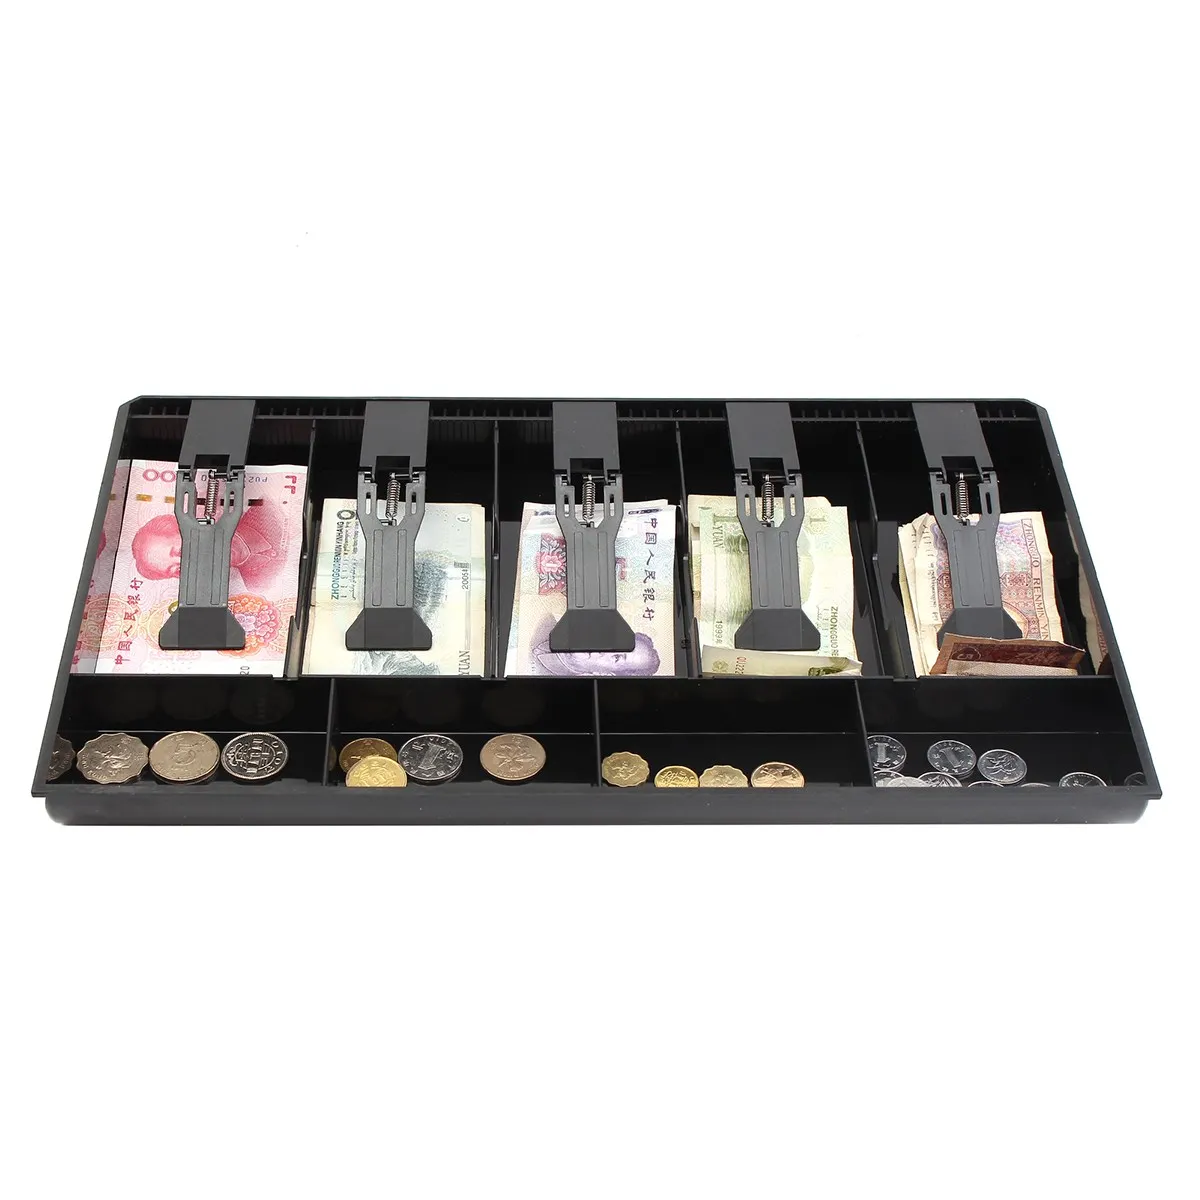 Image New Five Grid Cash Register Drawer Store Cashier Collection Cash Box 40.4x24.5x3.6cm